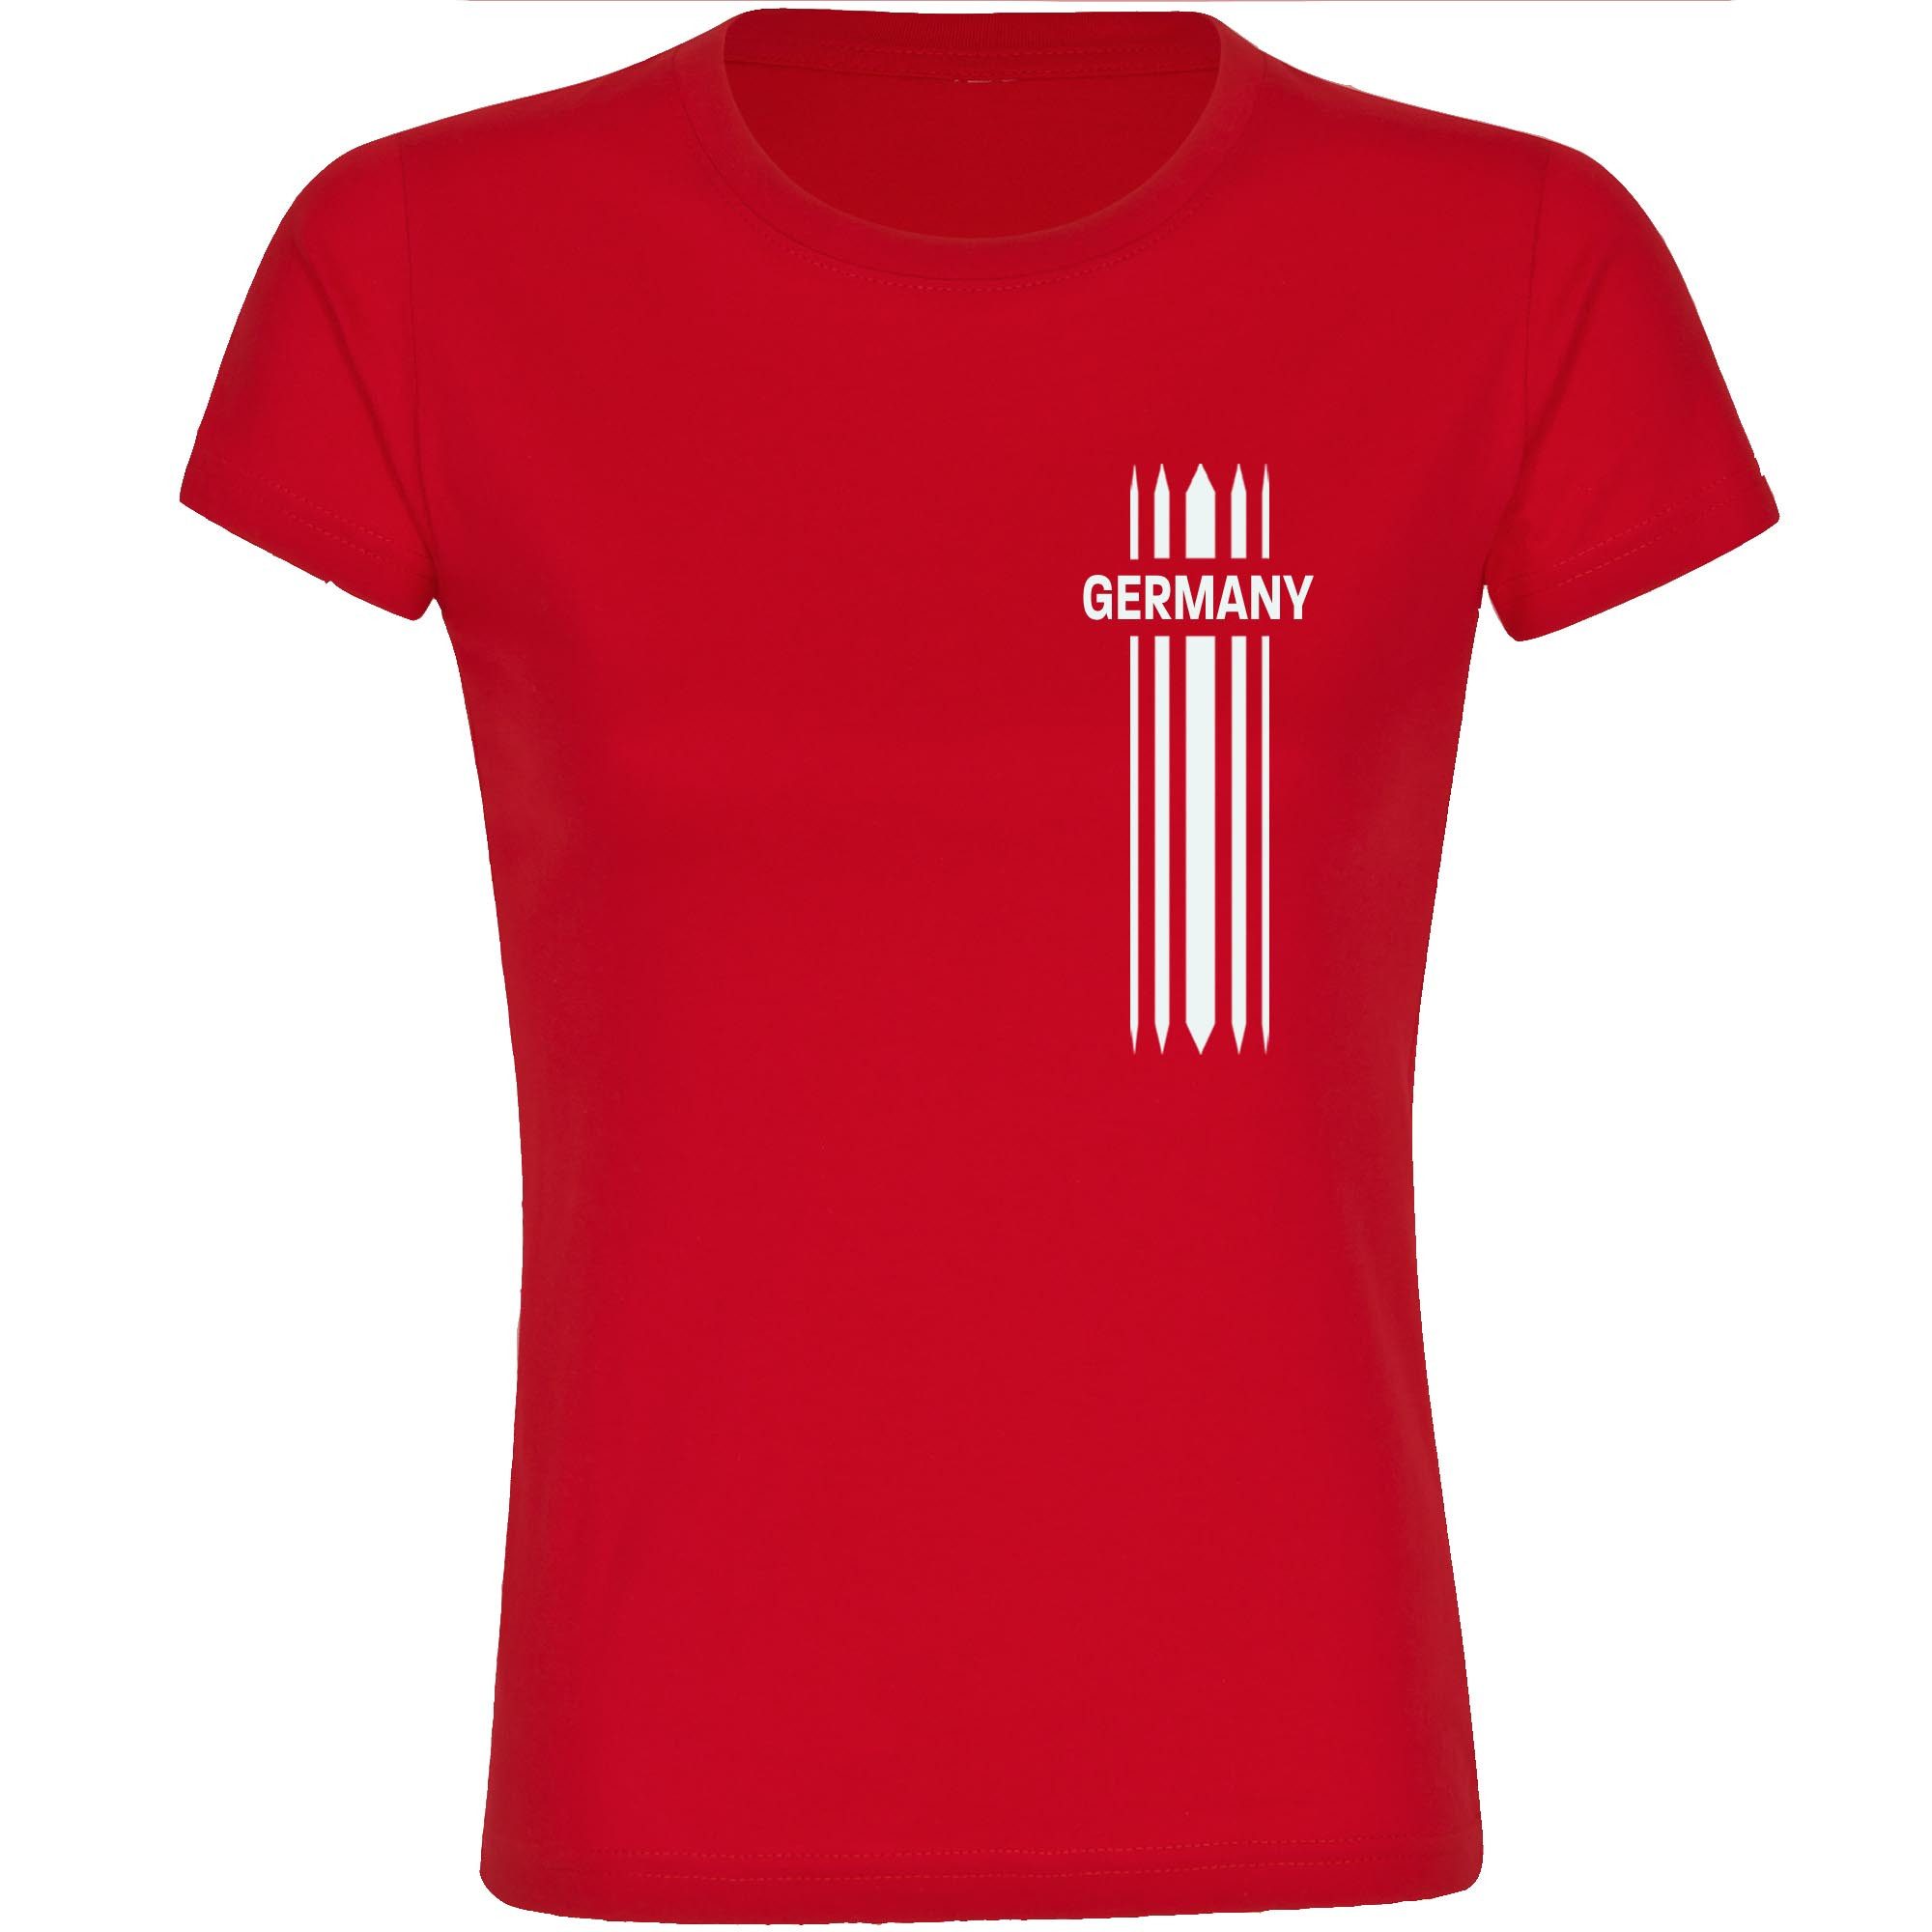 multifanshop T-Shirt Damen Germany - Streifen - Frauen